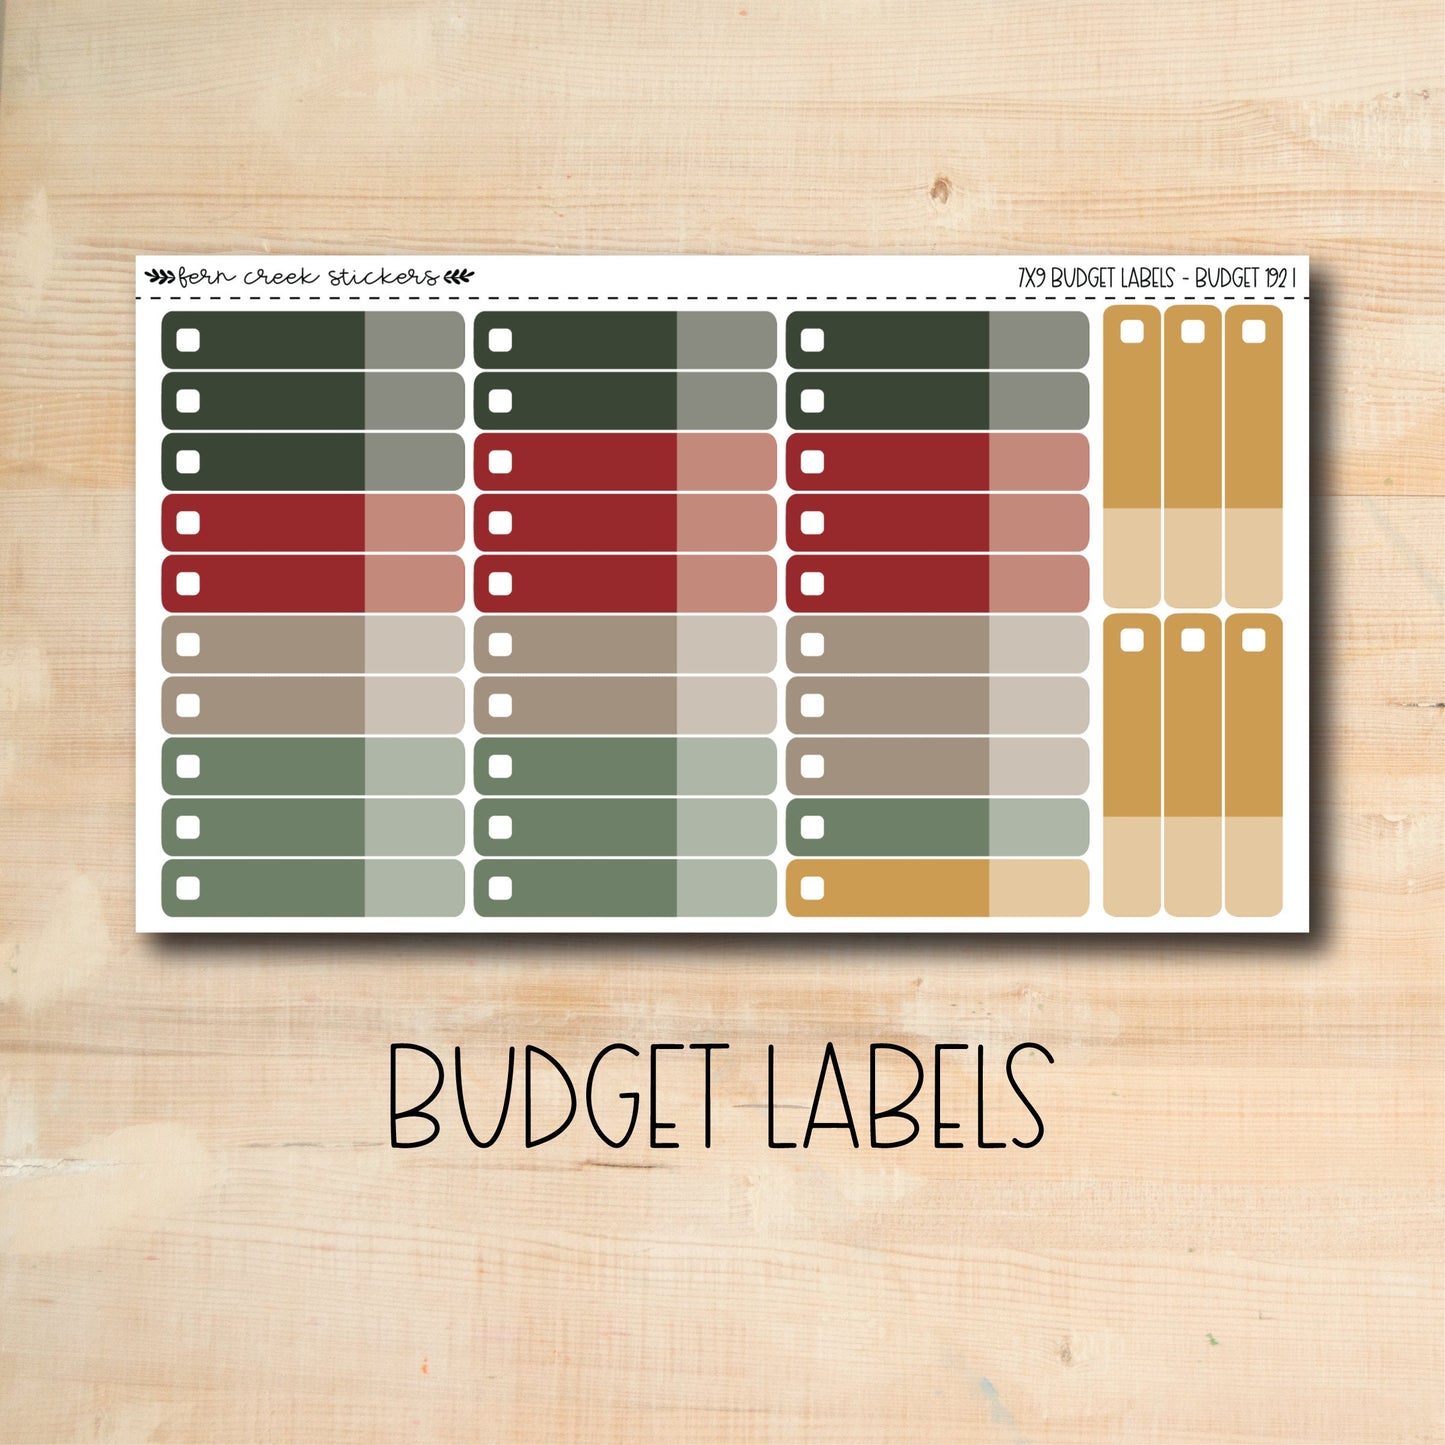 BUDGET-192 || CHRISTMAS CHEER 7x9 budget kit